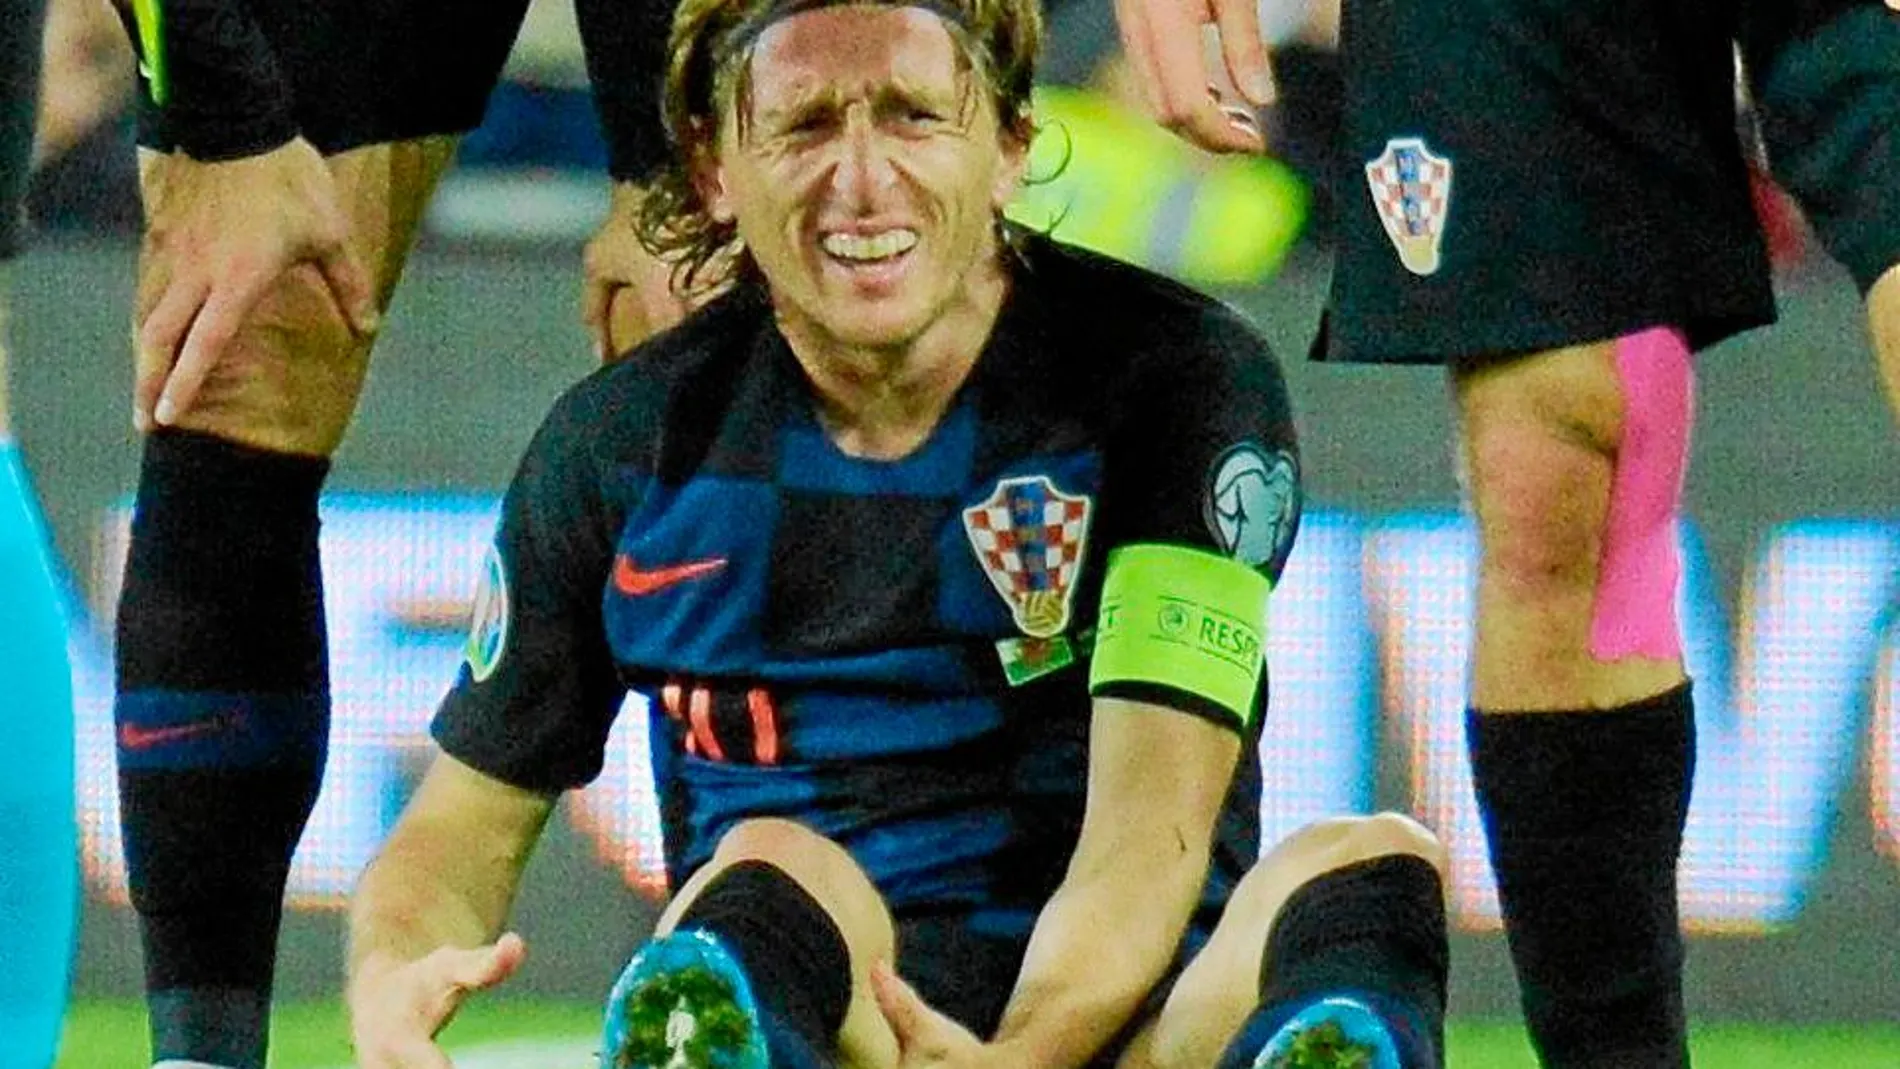 La salida del campo de Luka Modric resultó de lo más preocupante